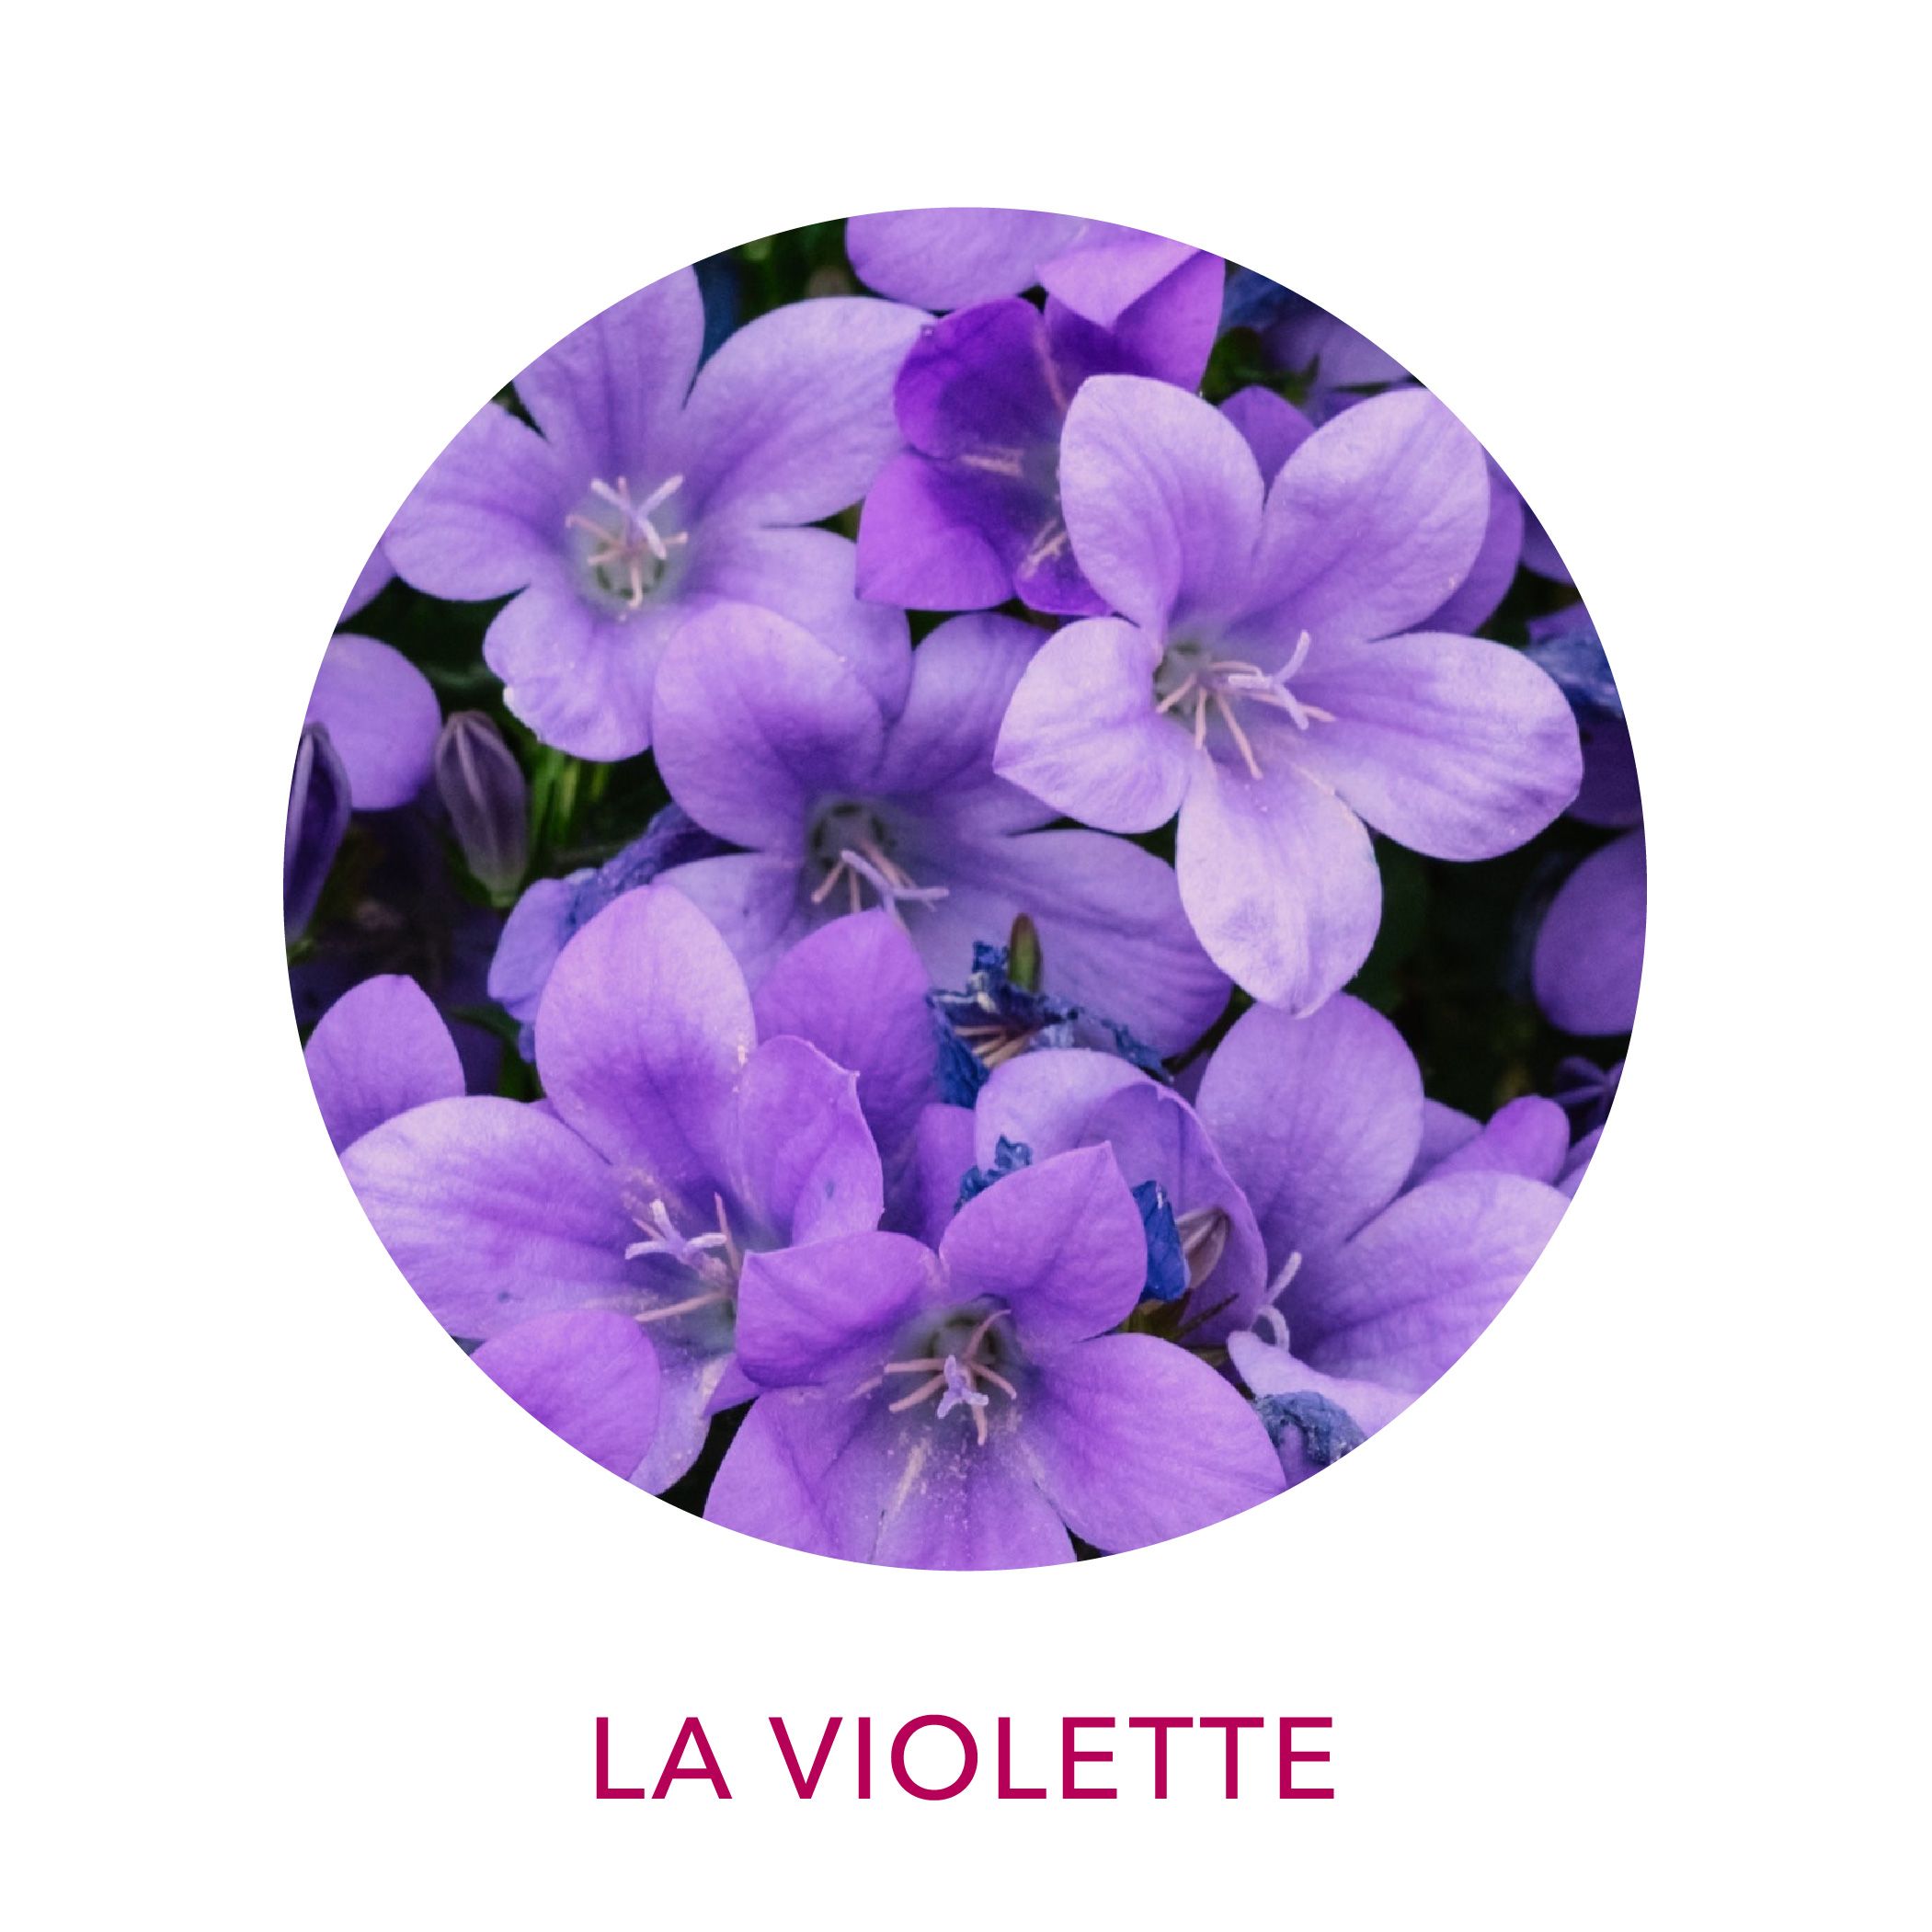 Actif cosmétique Clairjoie Fleur de violette